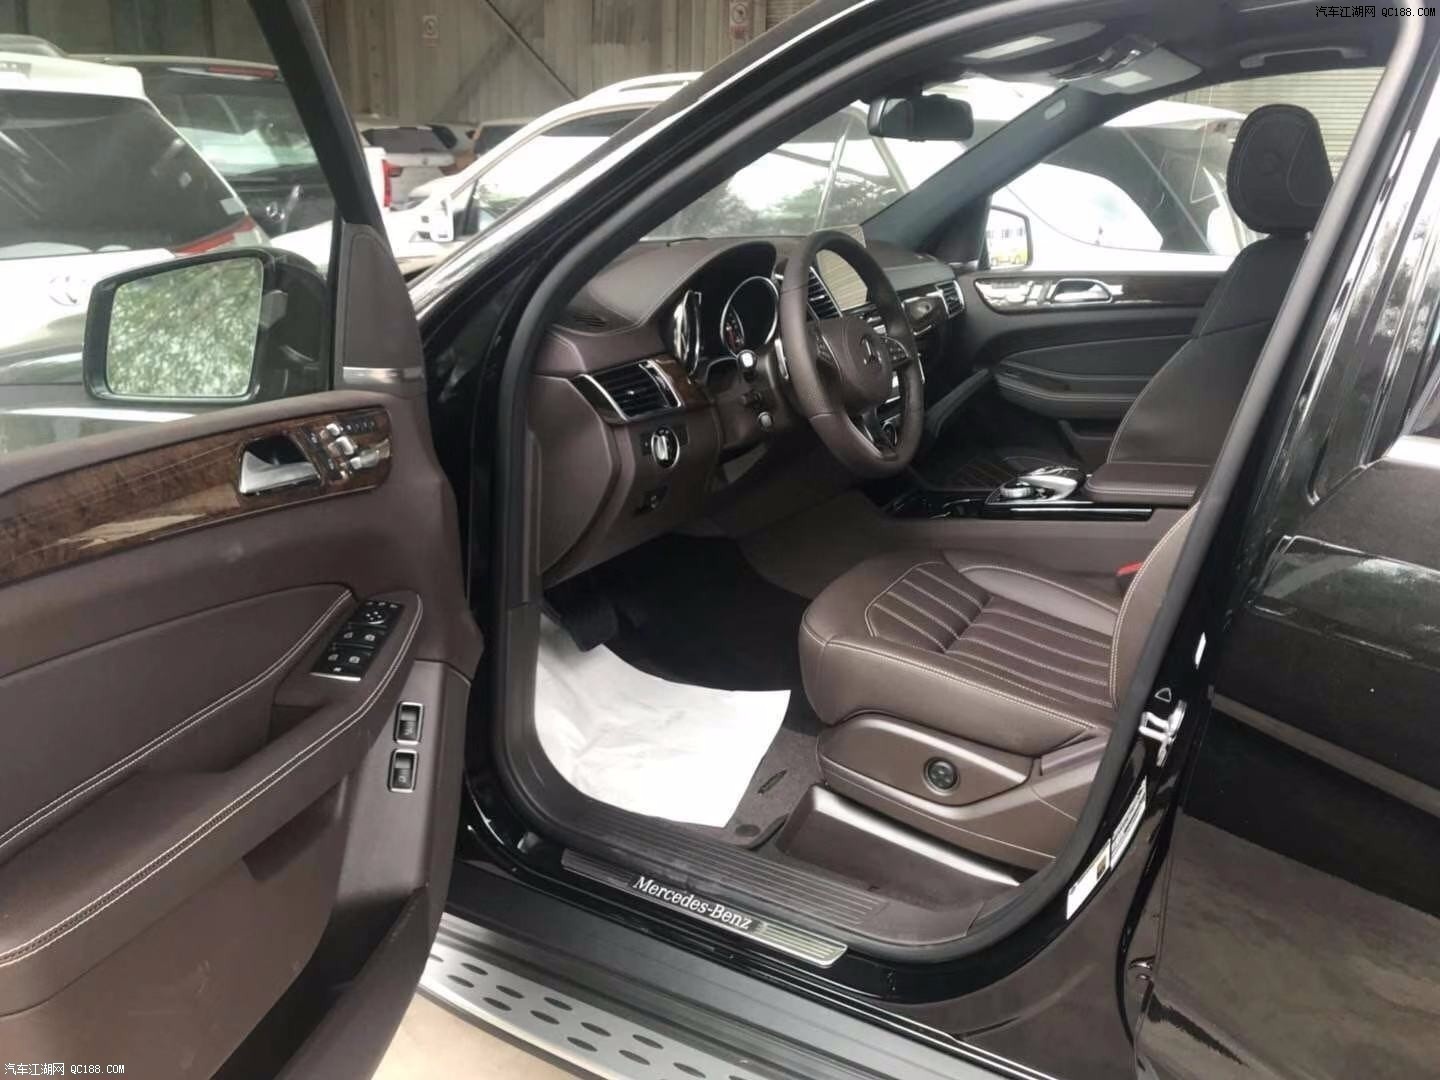 2019款美规版奔驰GLS450 豪华SUV解析